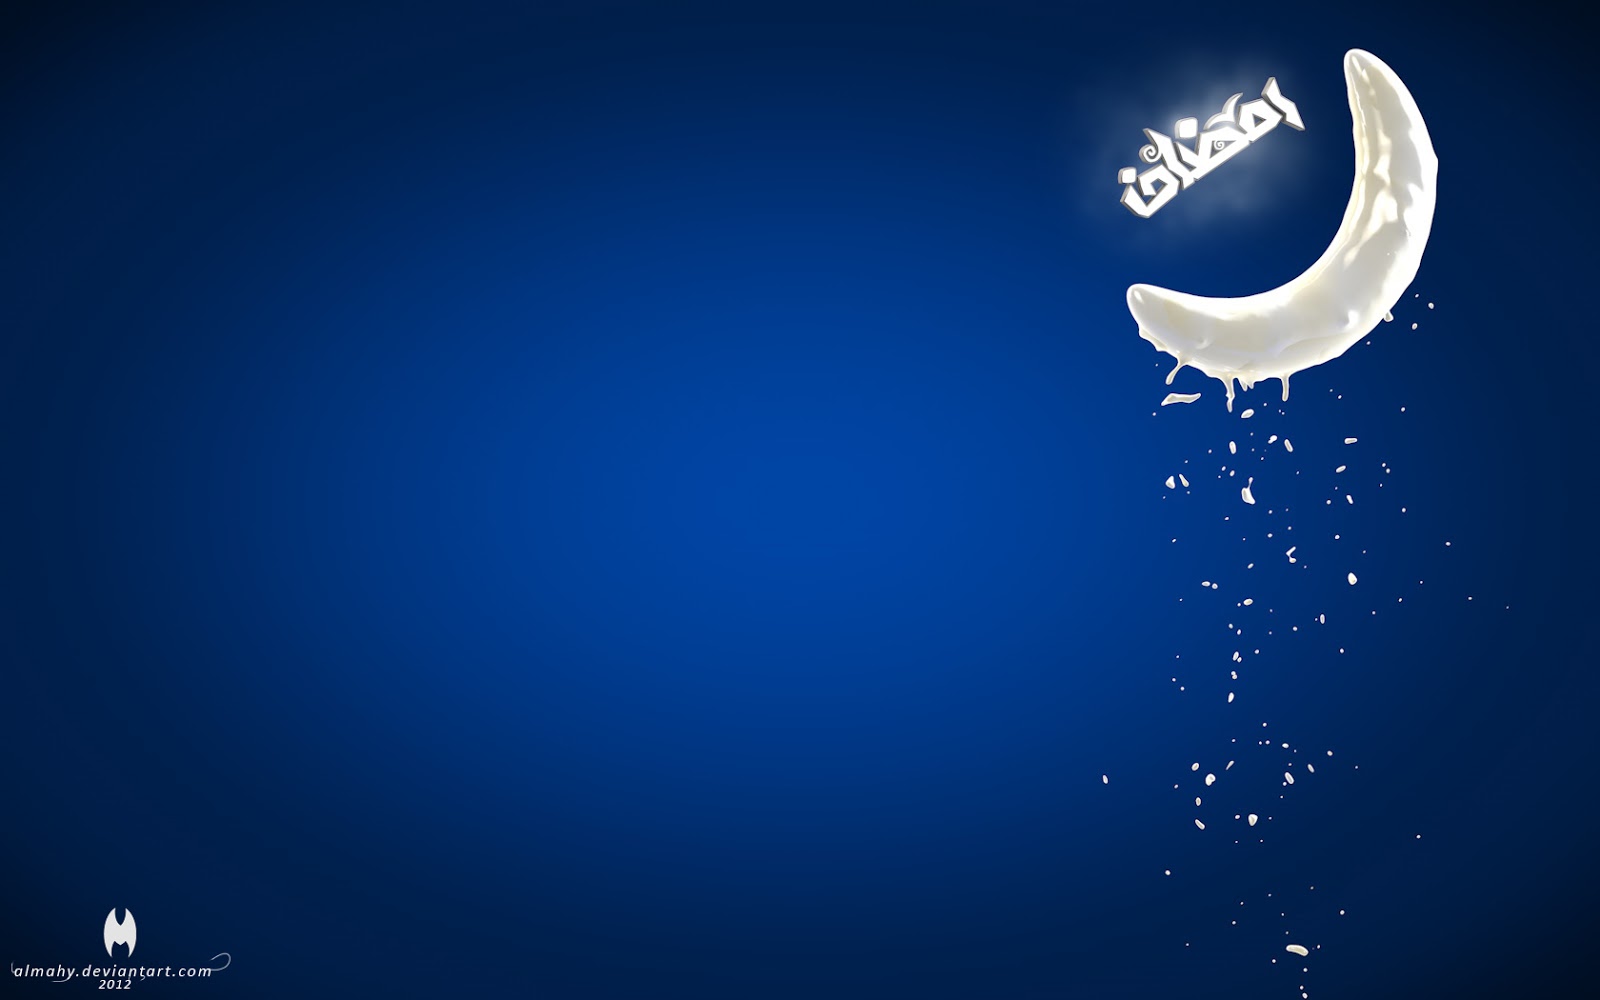 Gambar Wallpaper Background Ramadhan